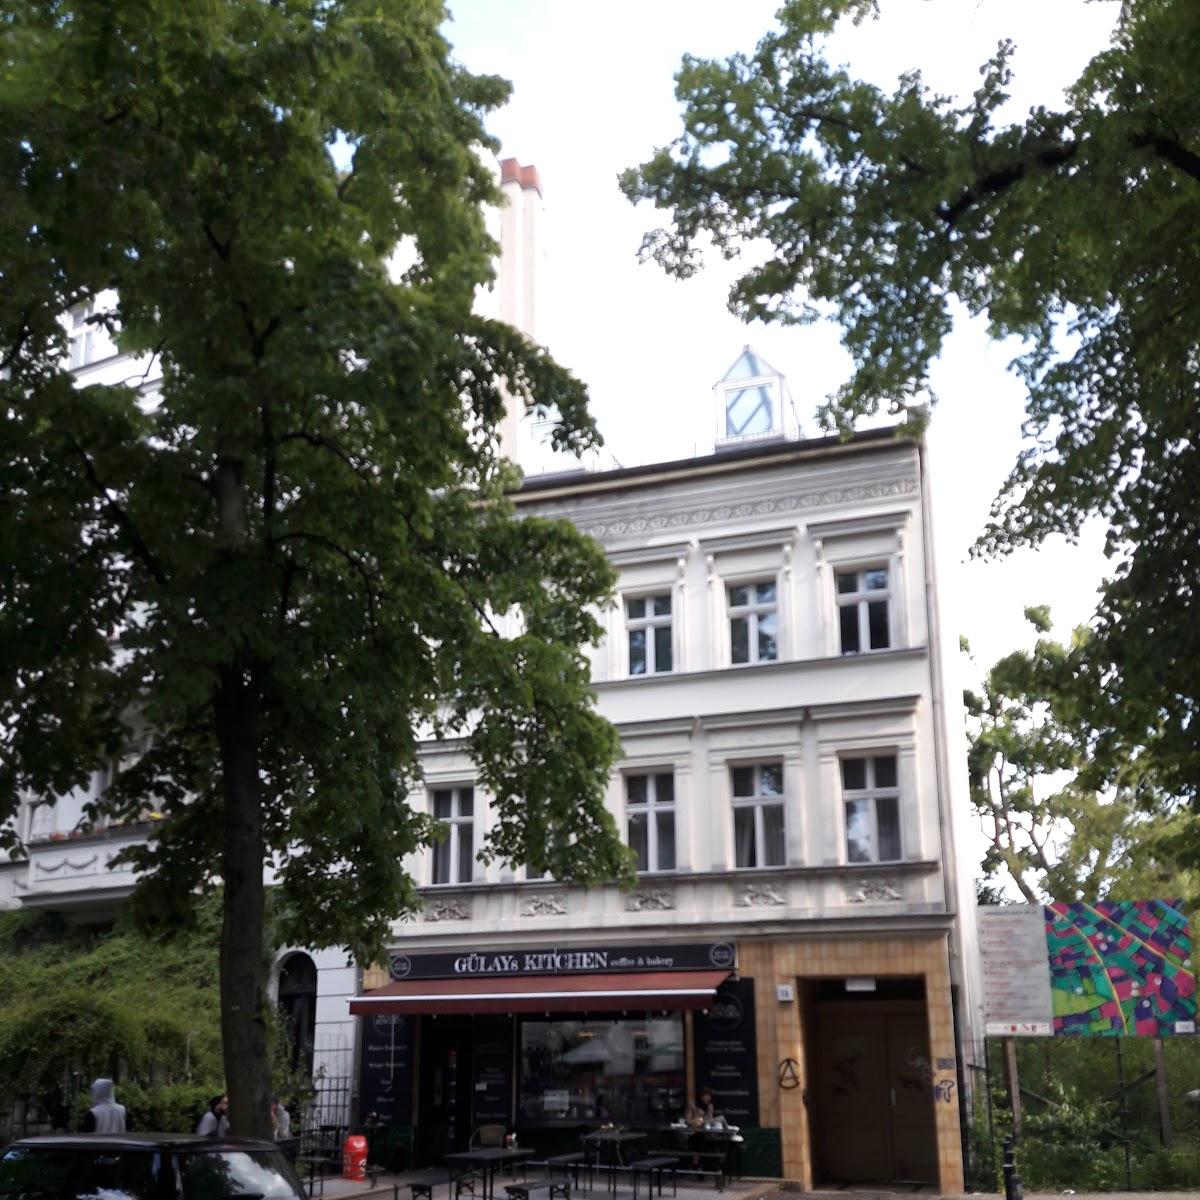 Restaurant "Gülays Kitchen" in Berlin